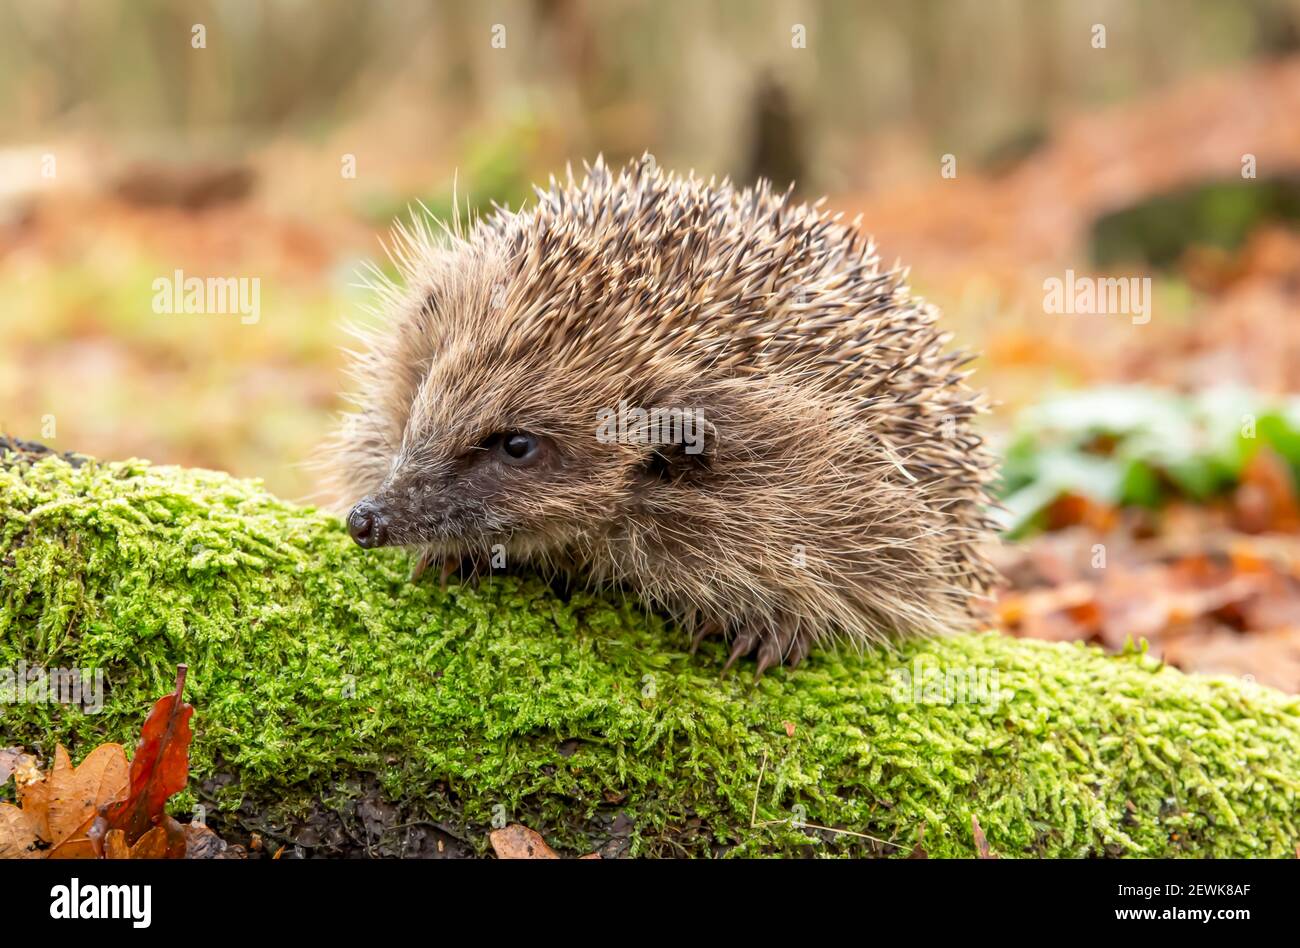 Hedgehog, nome scientifico: Erinaceus Europaeus. Riccio selvatico, nativo, europeo in inverno, rivolto a sinistra su log coperto di muschio verde. Orizzontale. Spazio Foto Stock